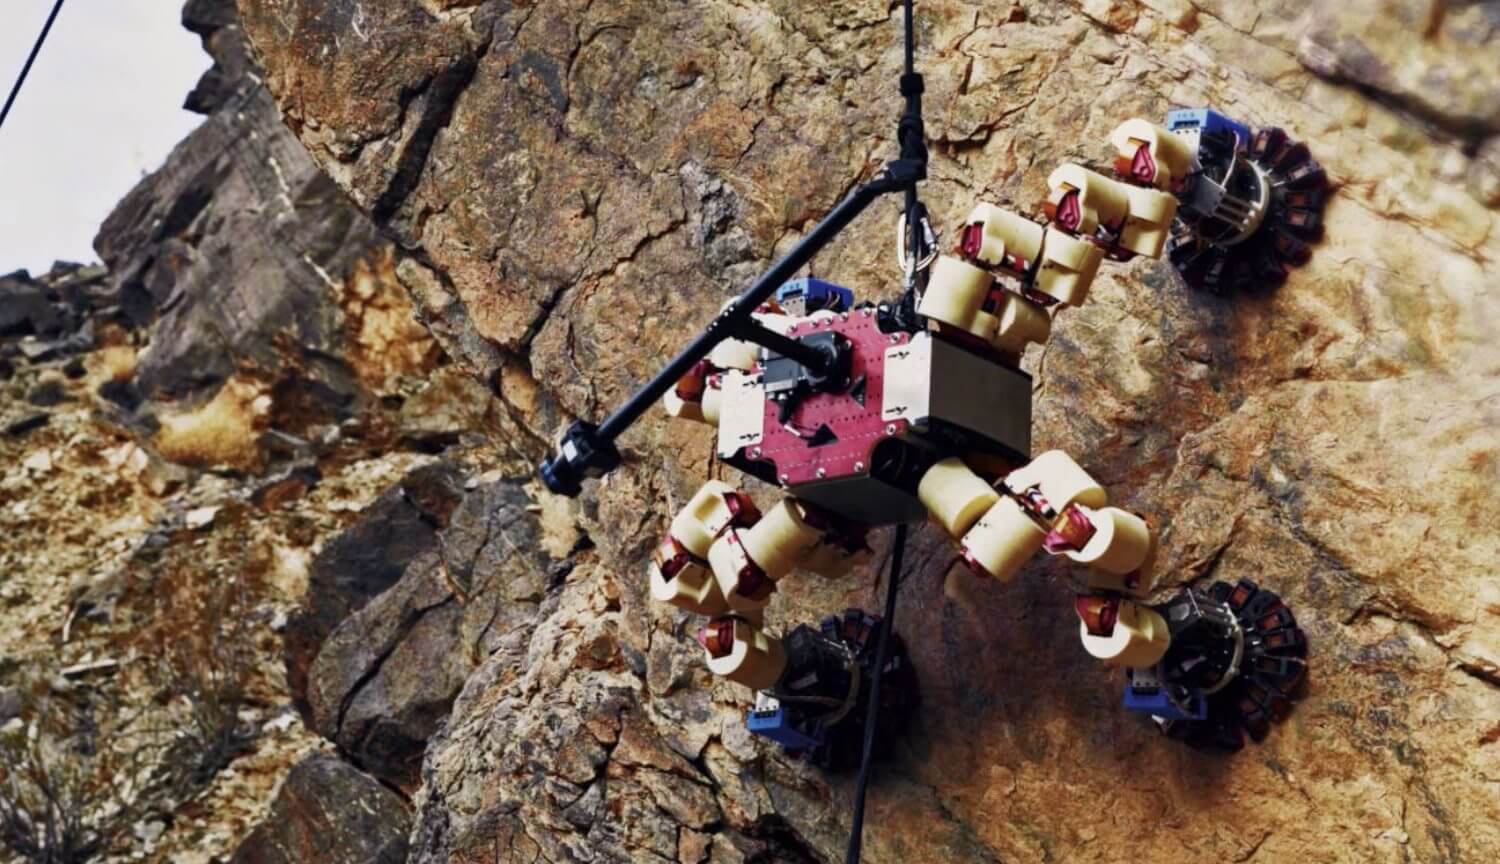 ロボットの登山者を示したものです。 彼らはなぜ必要ですか?